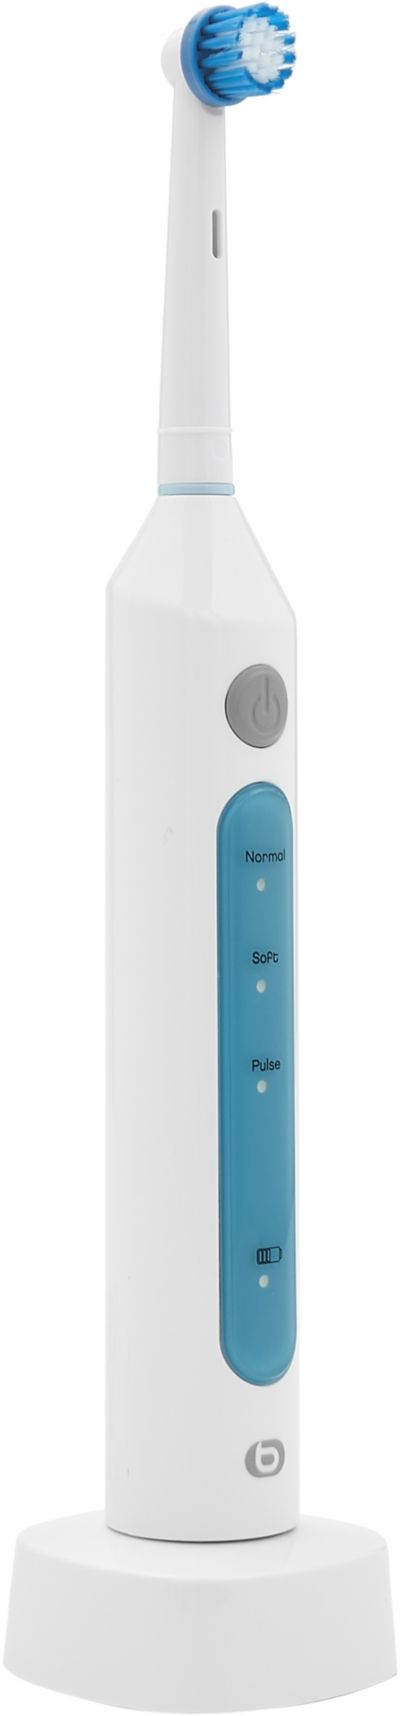 ESSENTIELB rechargeable Pulse Confort bleue EBDER2